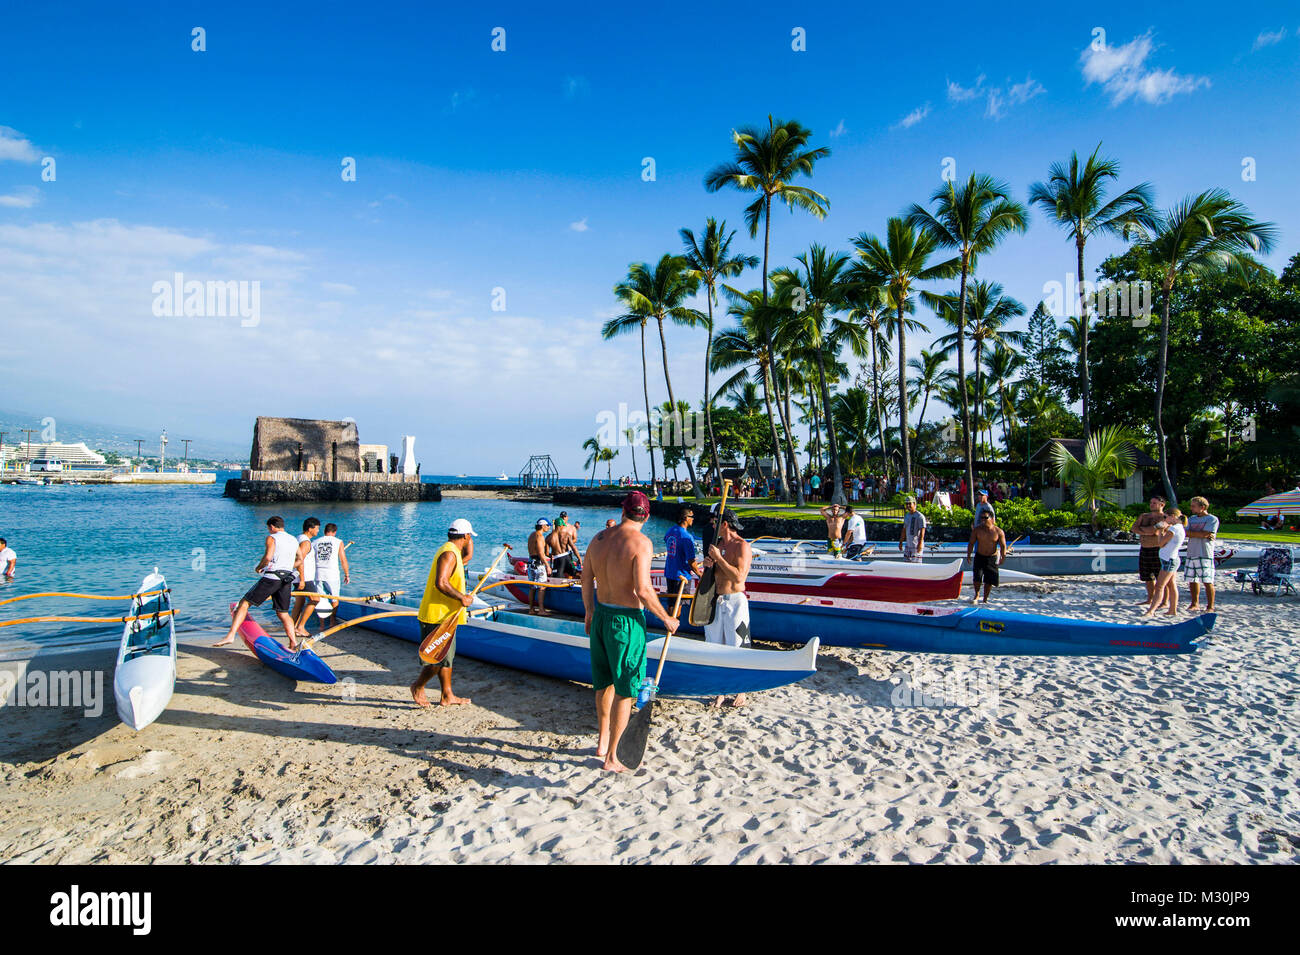 Outrigger boats on Kamakahonu beach, Kailua -Kona, Big Island, Hawaii Stock Photo